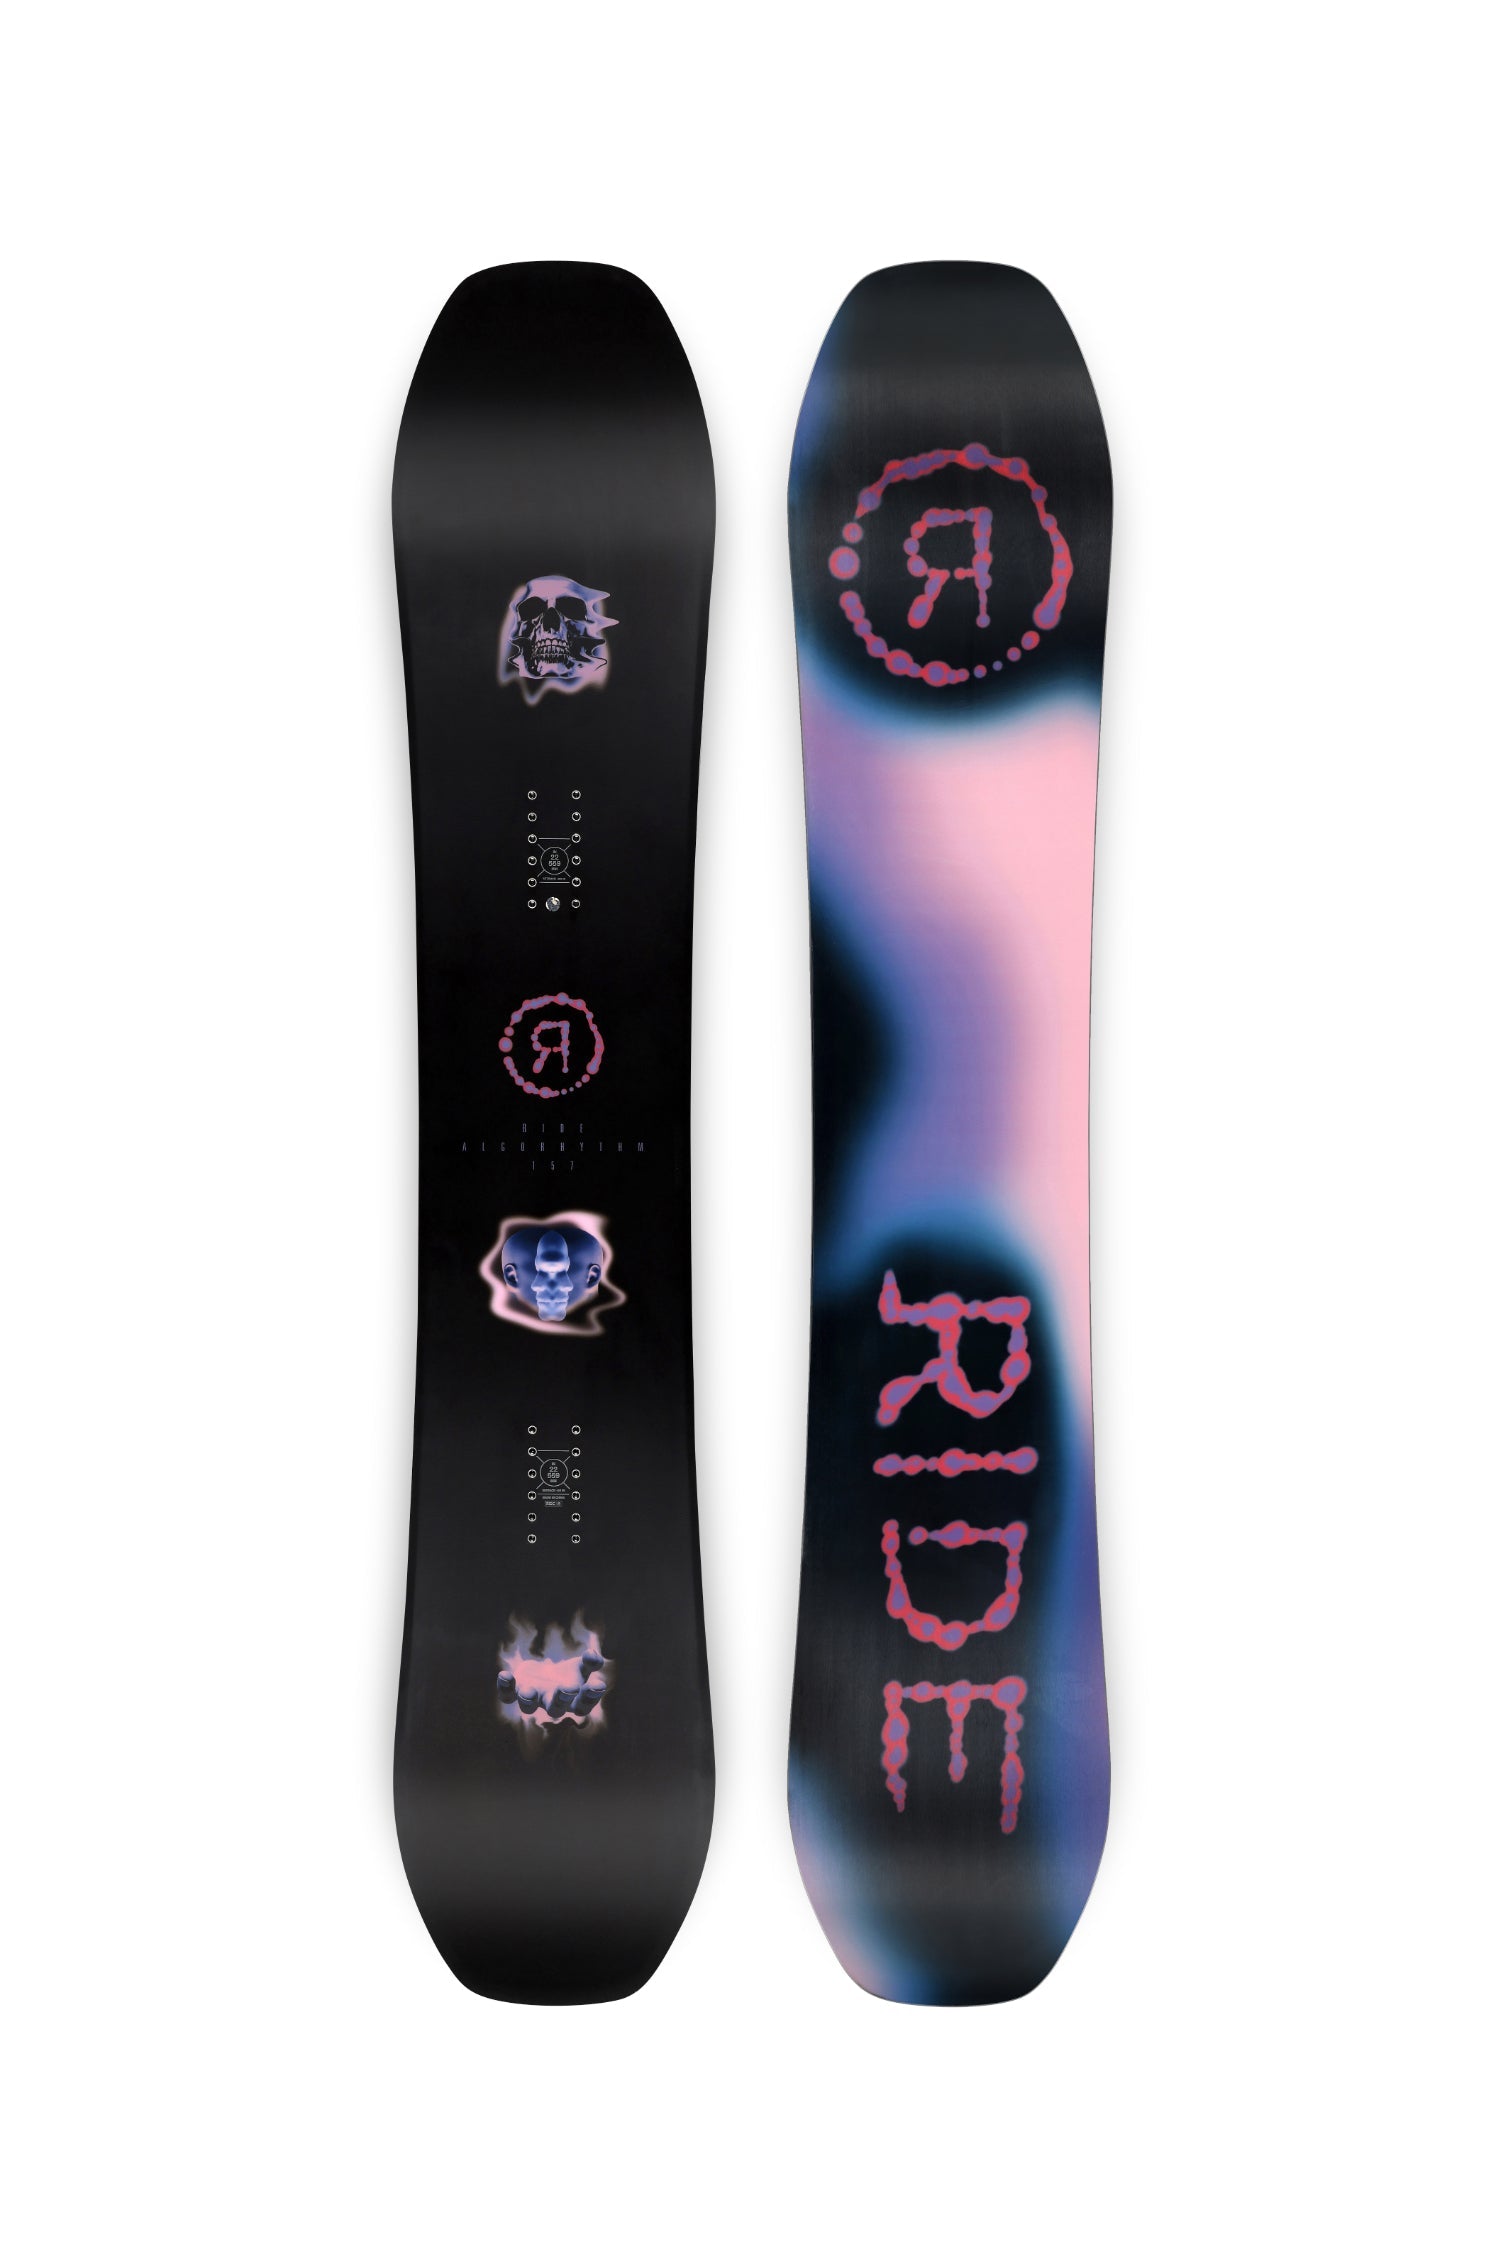 Ride Snowboards – aspect /